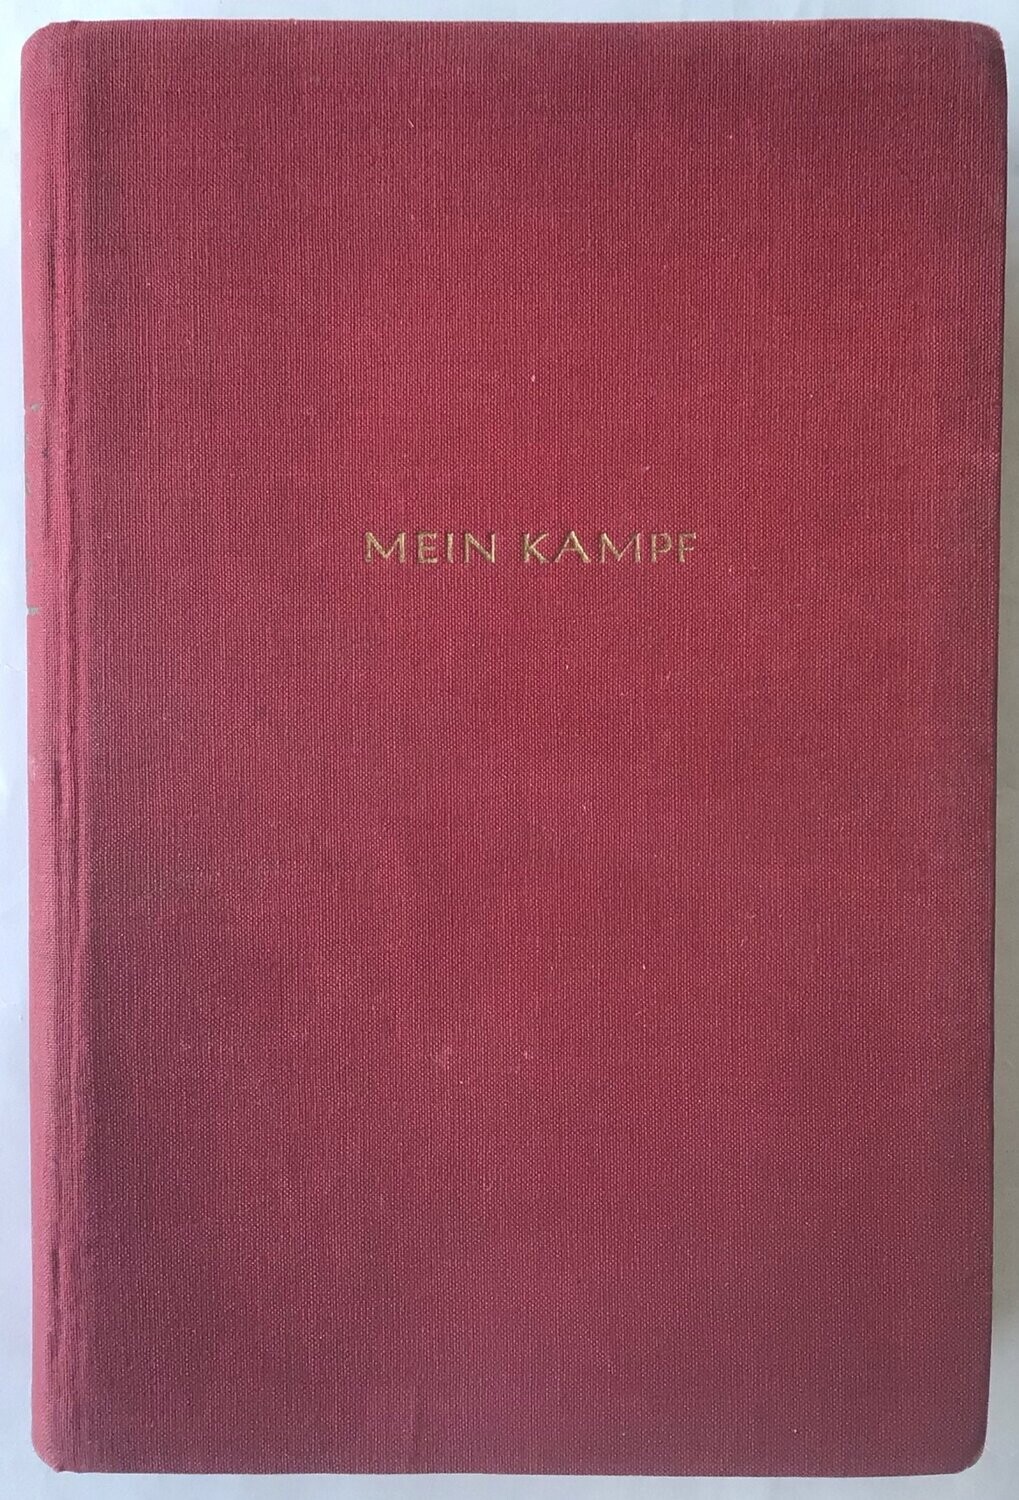 M. K. - Feldpost- oder Tornisterausgabe - 9. Auflage aus dem Jahr 1941